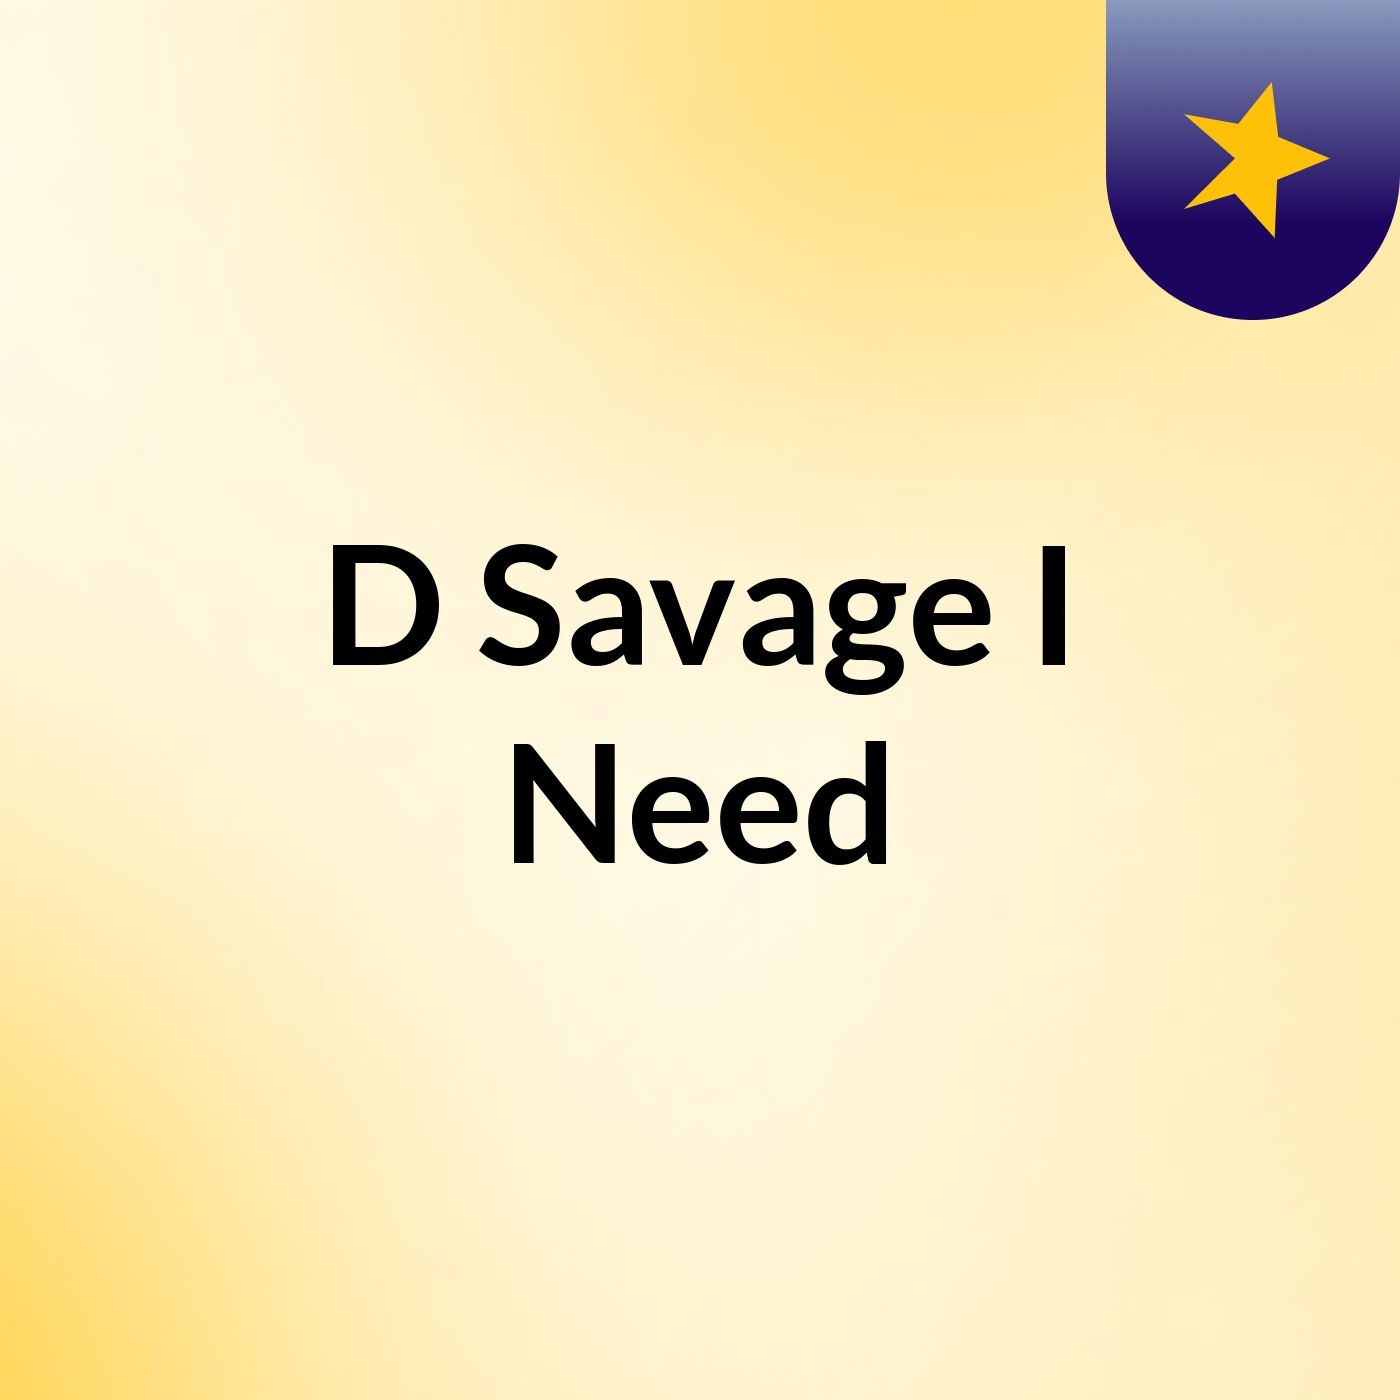 D Savage I Need